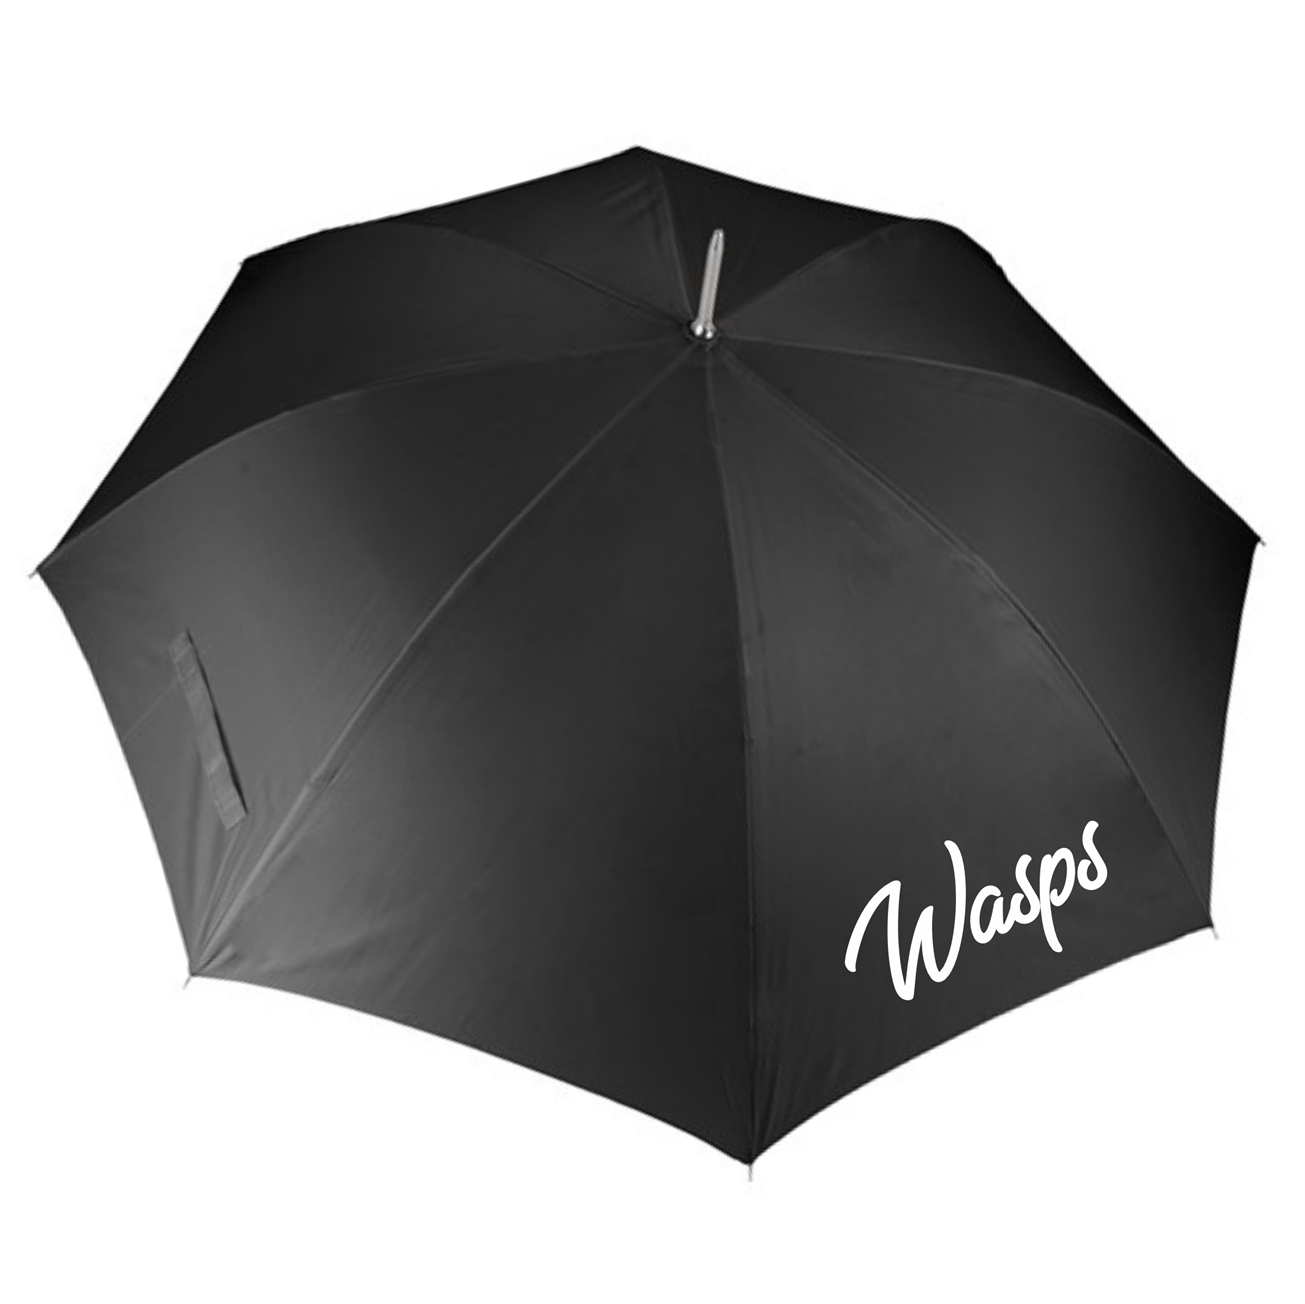 Wordsley Wasps - Umbrella